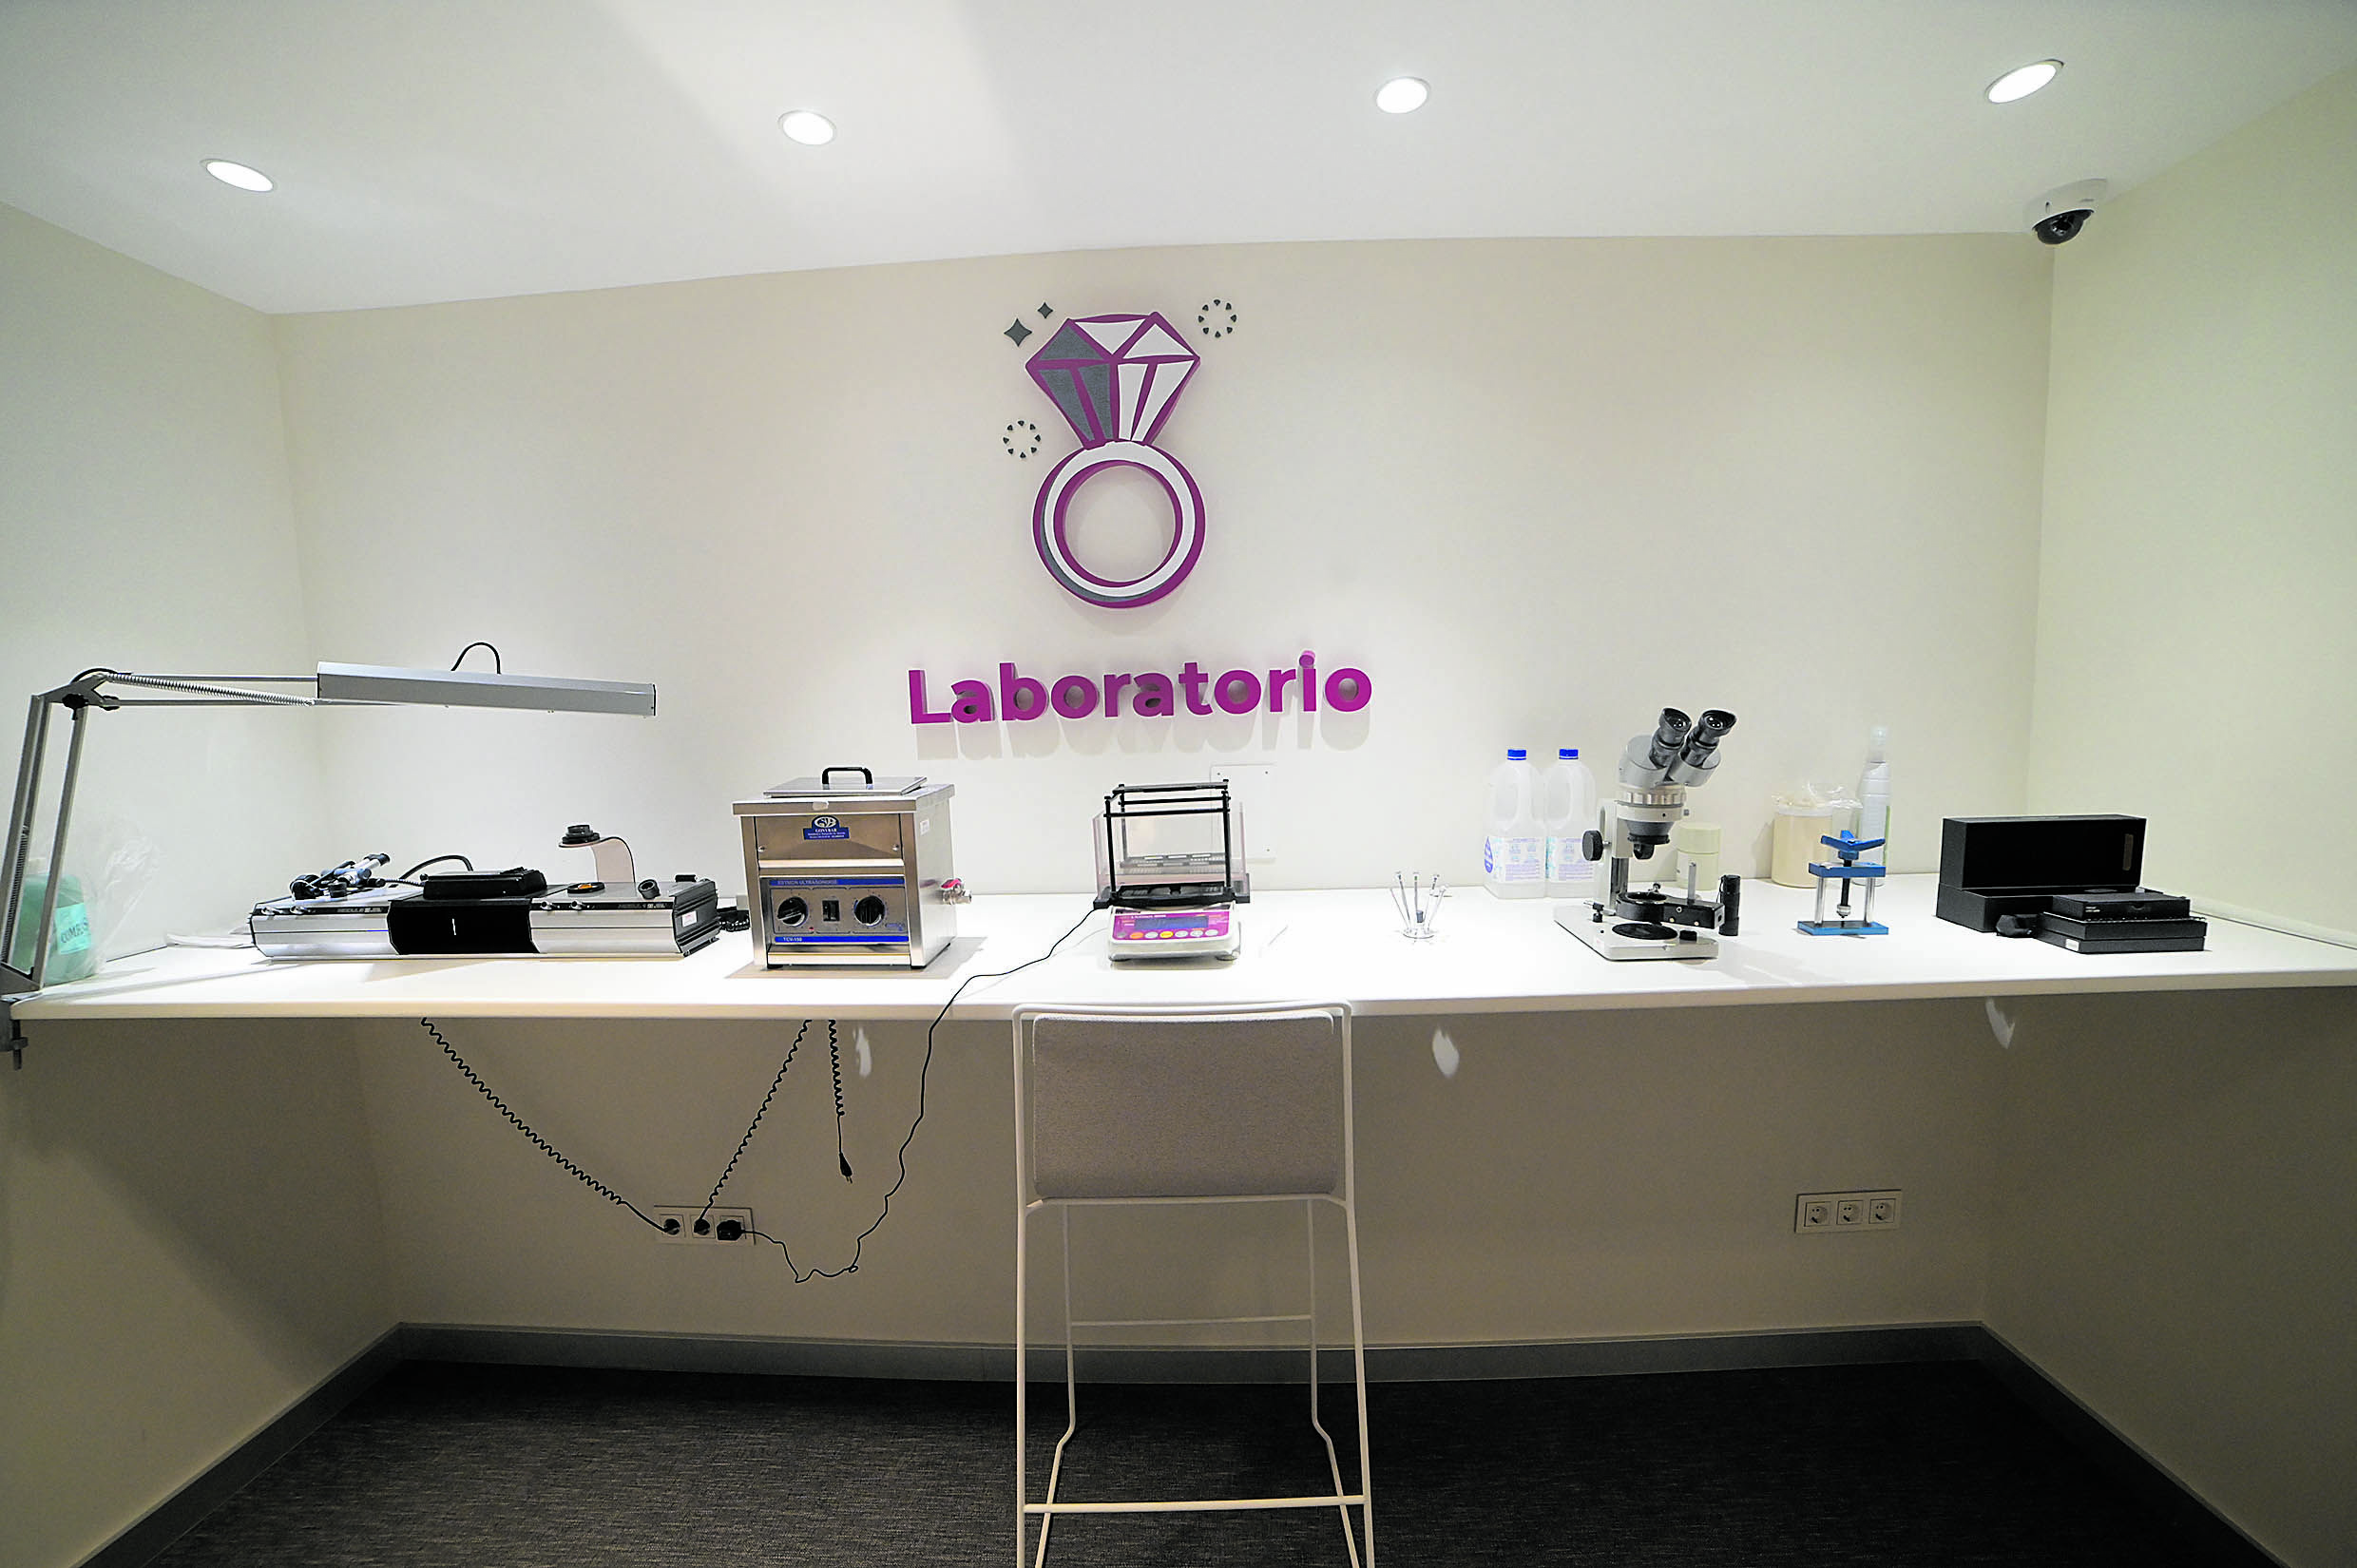 Todas las oficinas cuentan con laboratorio y profesionales que garantizan una tasación justa y transparente. | MAURICIO PEÑA